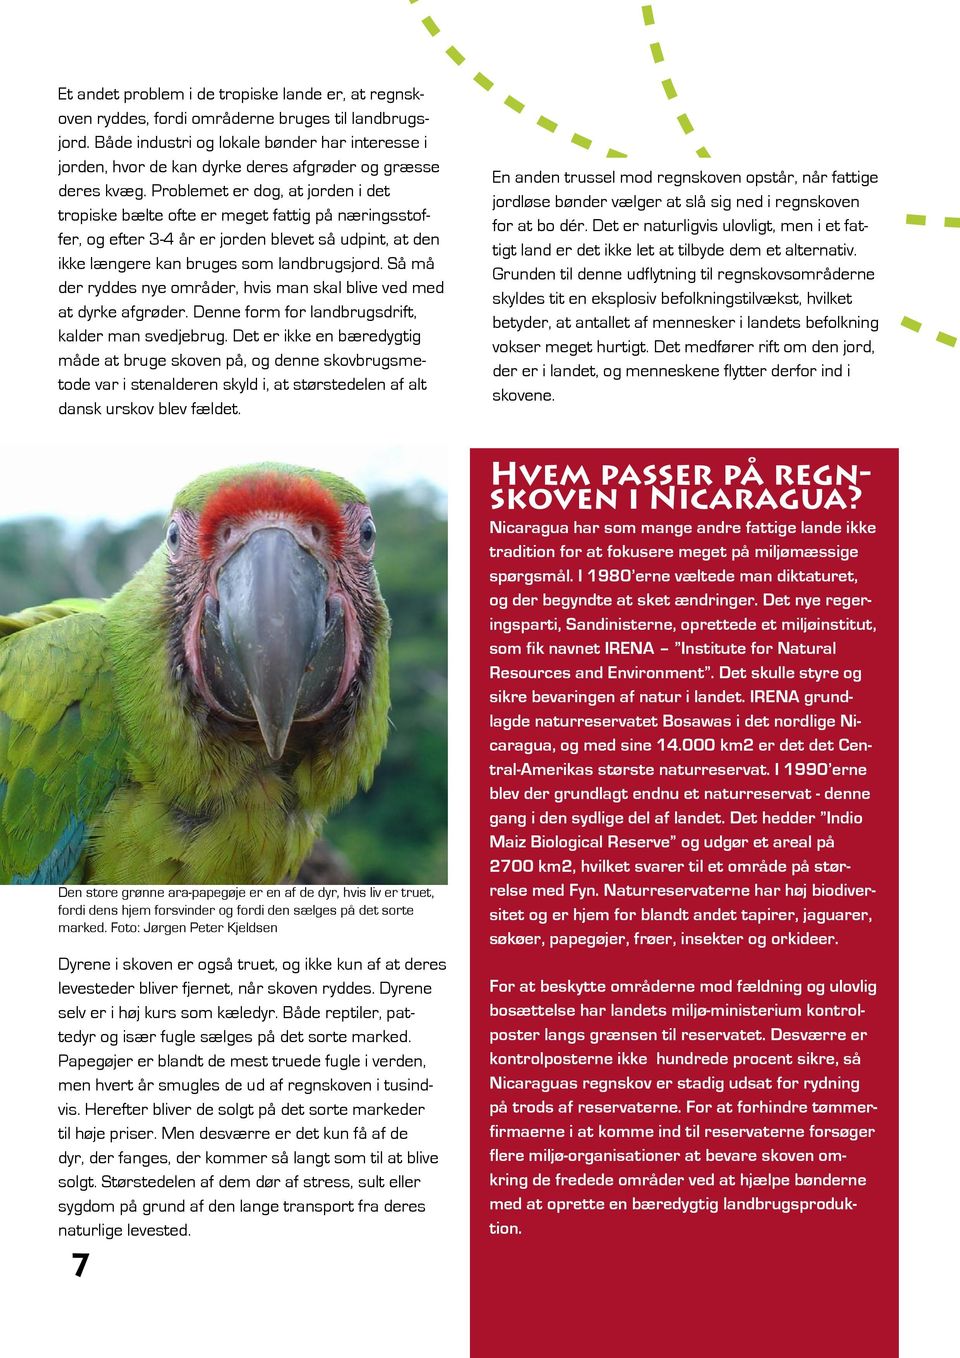 SAVNES UNDERVISNINGSMATERIALE KLASSE. Lær om Regnskoven Klimaer Ara-papegøjen Bæredygtighed Fotosyntese Nicaragua - PDF Gratis download